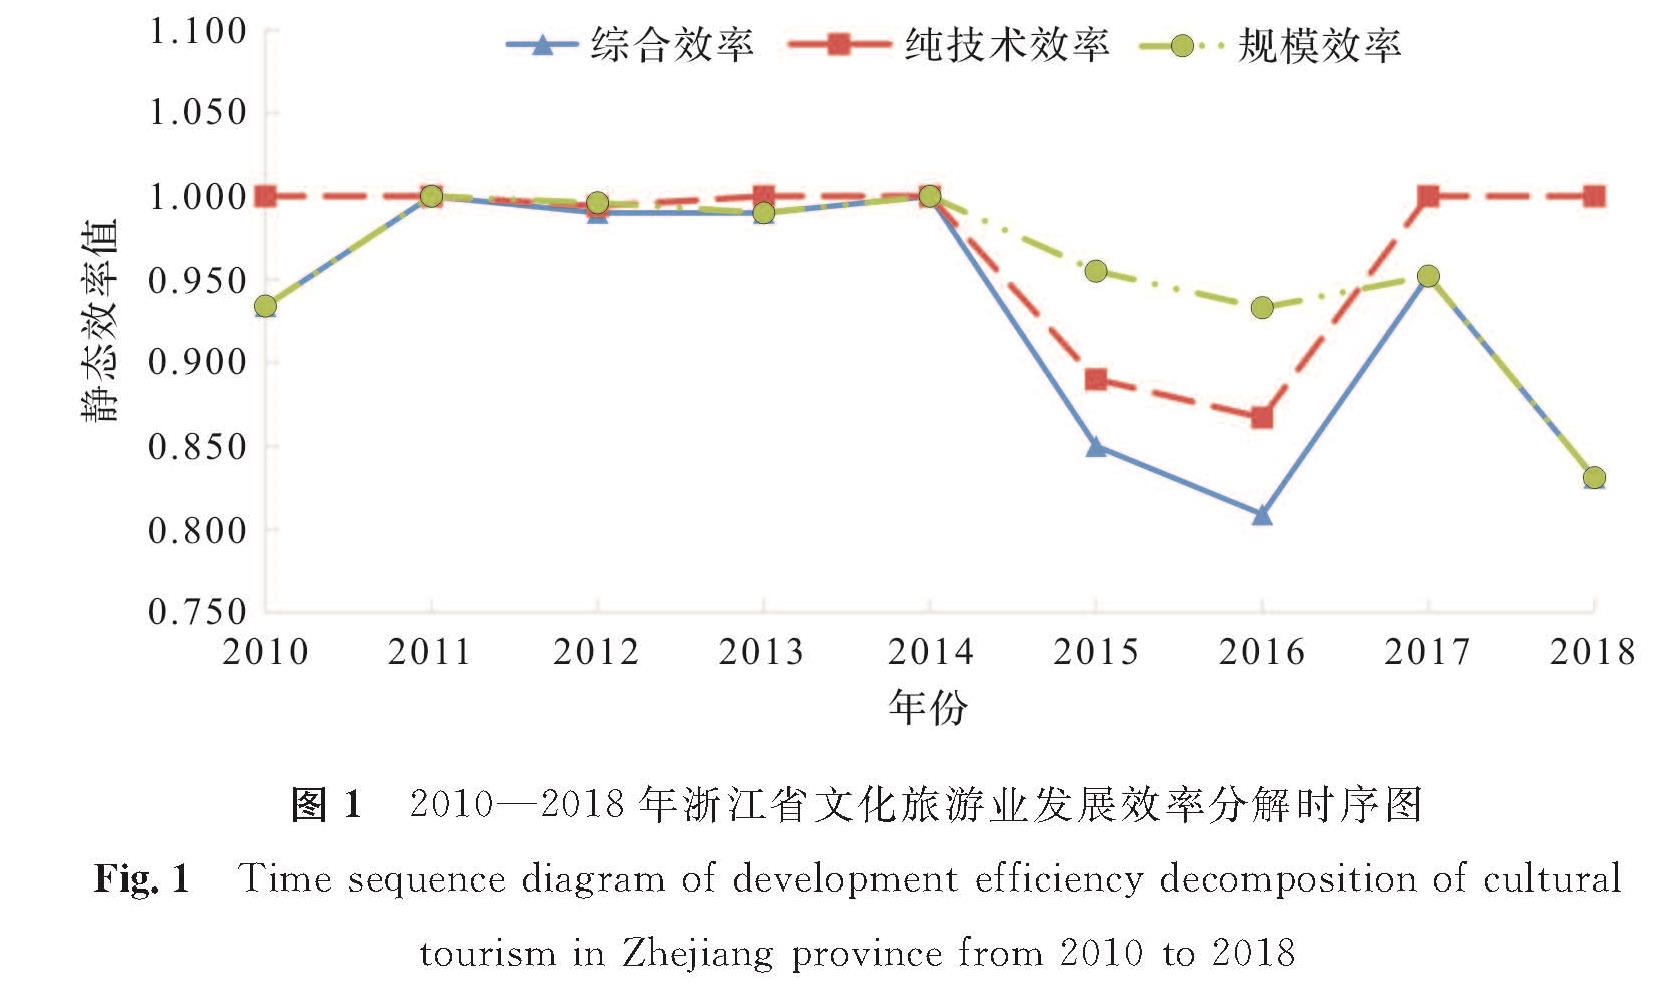 图1 2010—2018年浙江省文化旅游业发展效率分解时序图<br/>Fig.1 Time sequence diagram of development efficiency decomposition of cultural tourism in Zhejiang province from 2010 to 2018